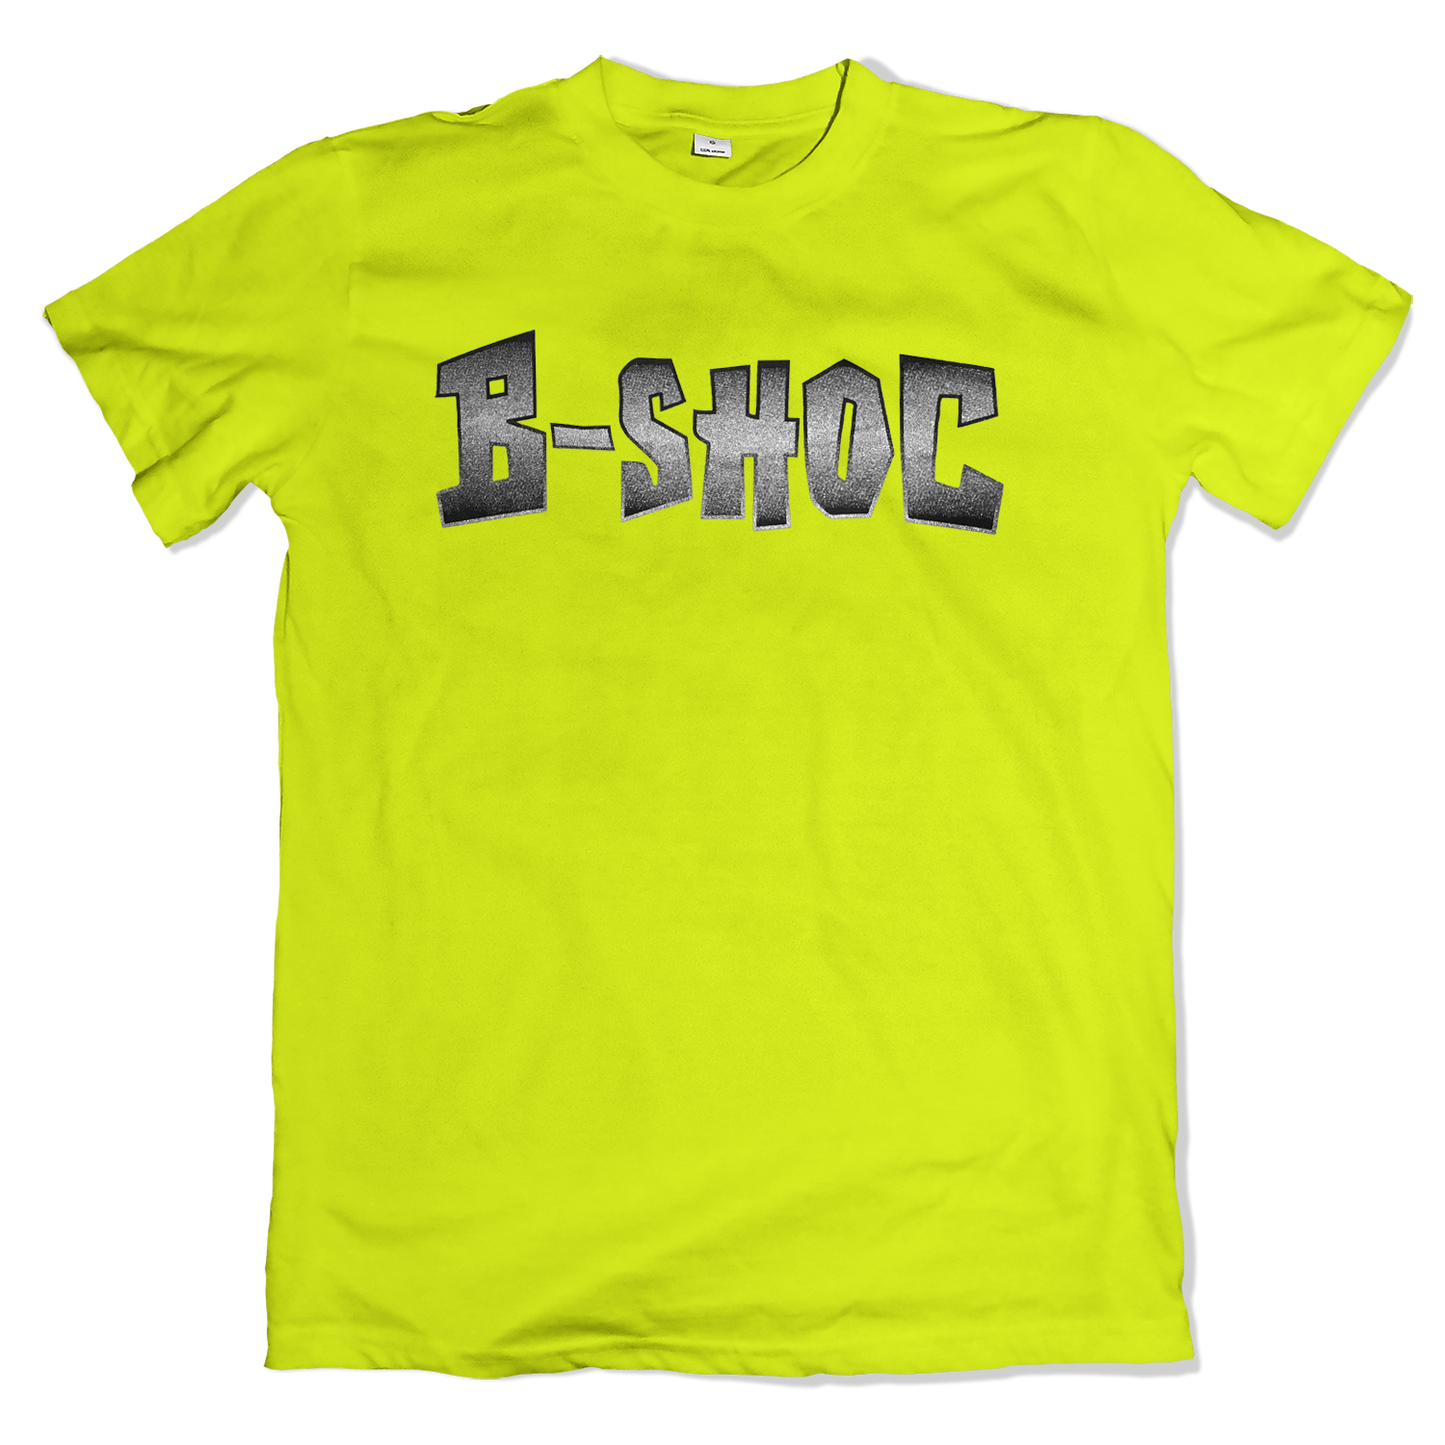 B-SHOC - Yellow T-Shirt